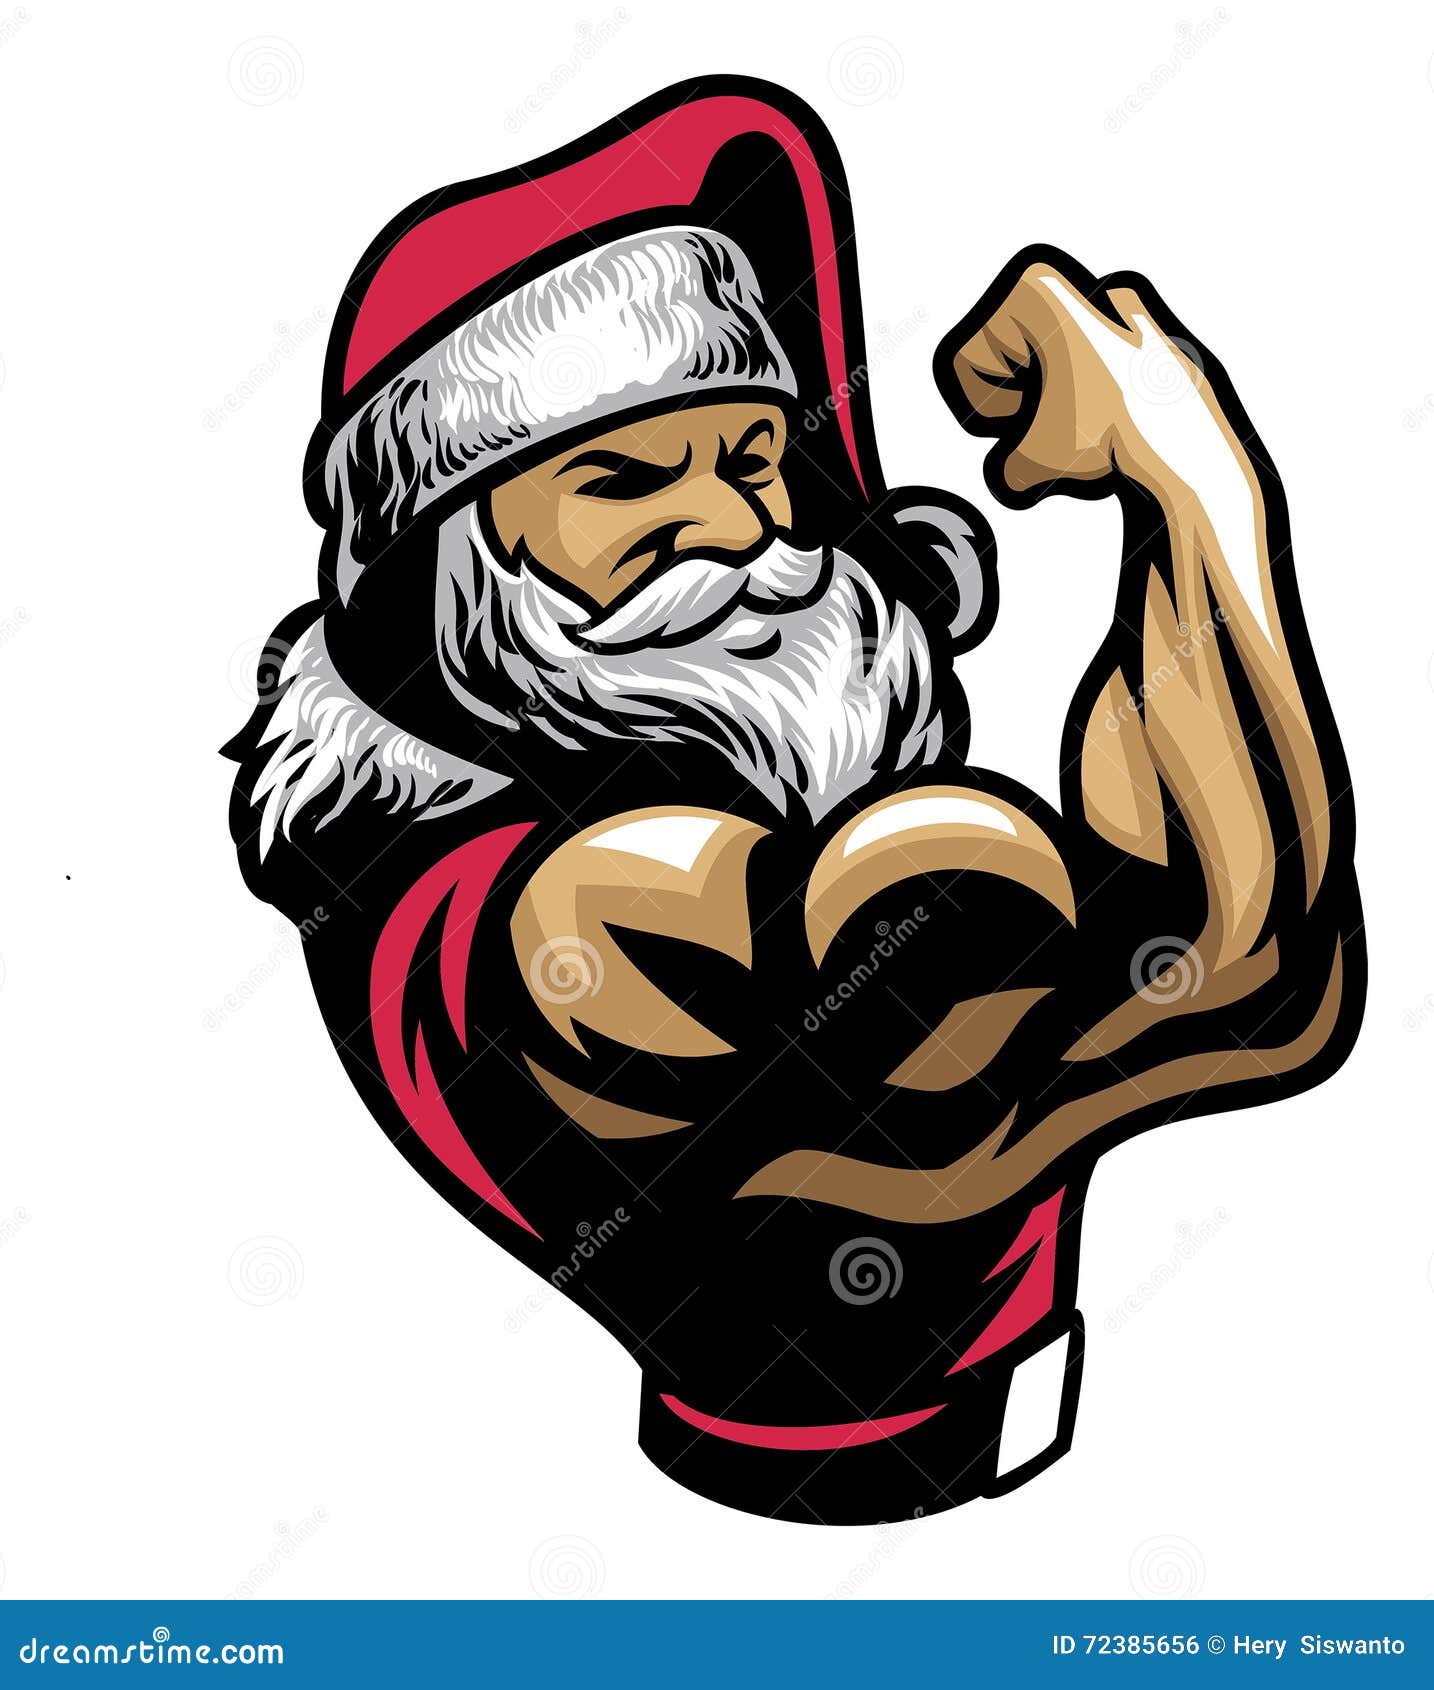 muscular santa claus show his bicep arm